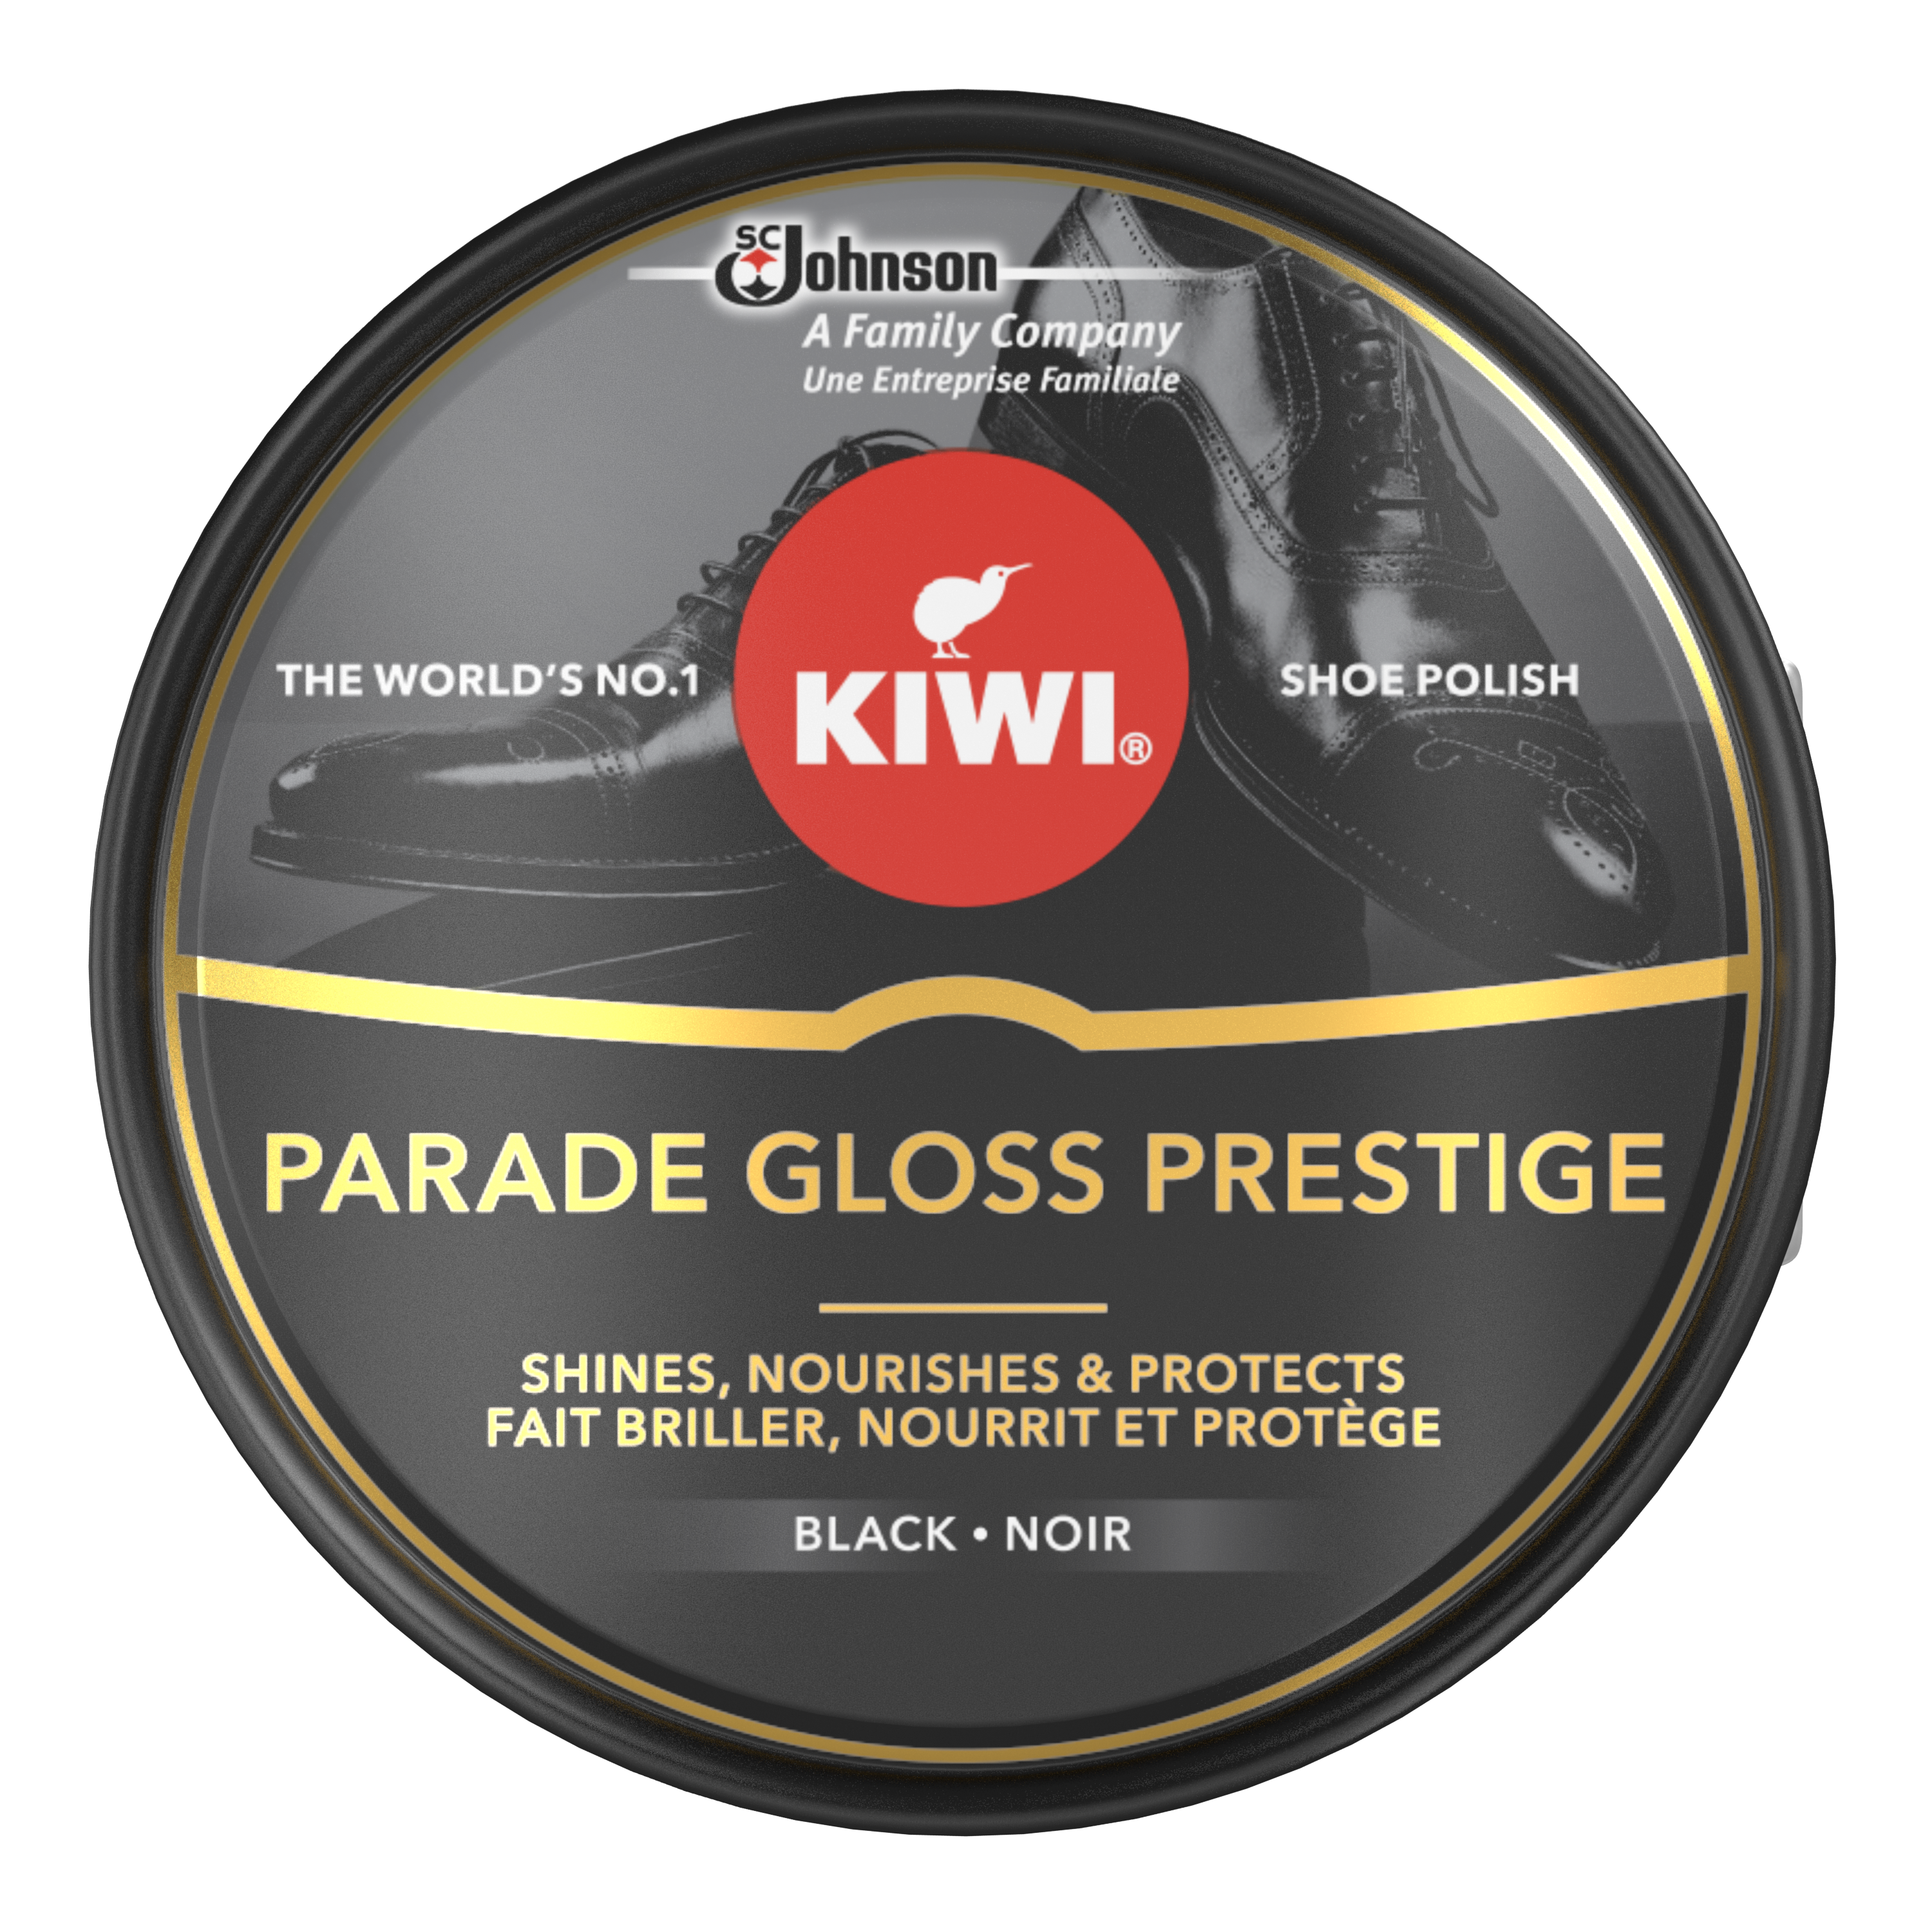 KIWI® Parade Gloss Prestige cremă pantofi neagră